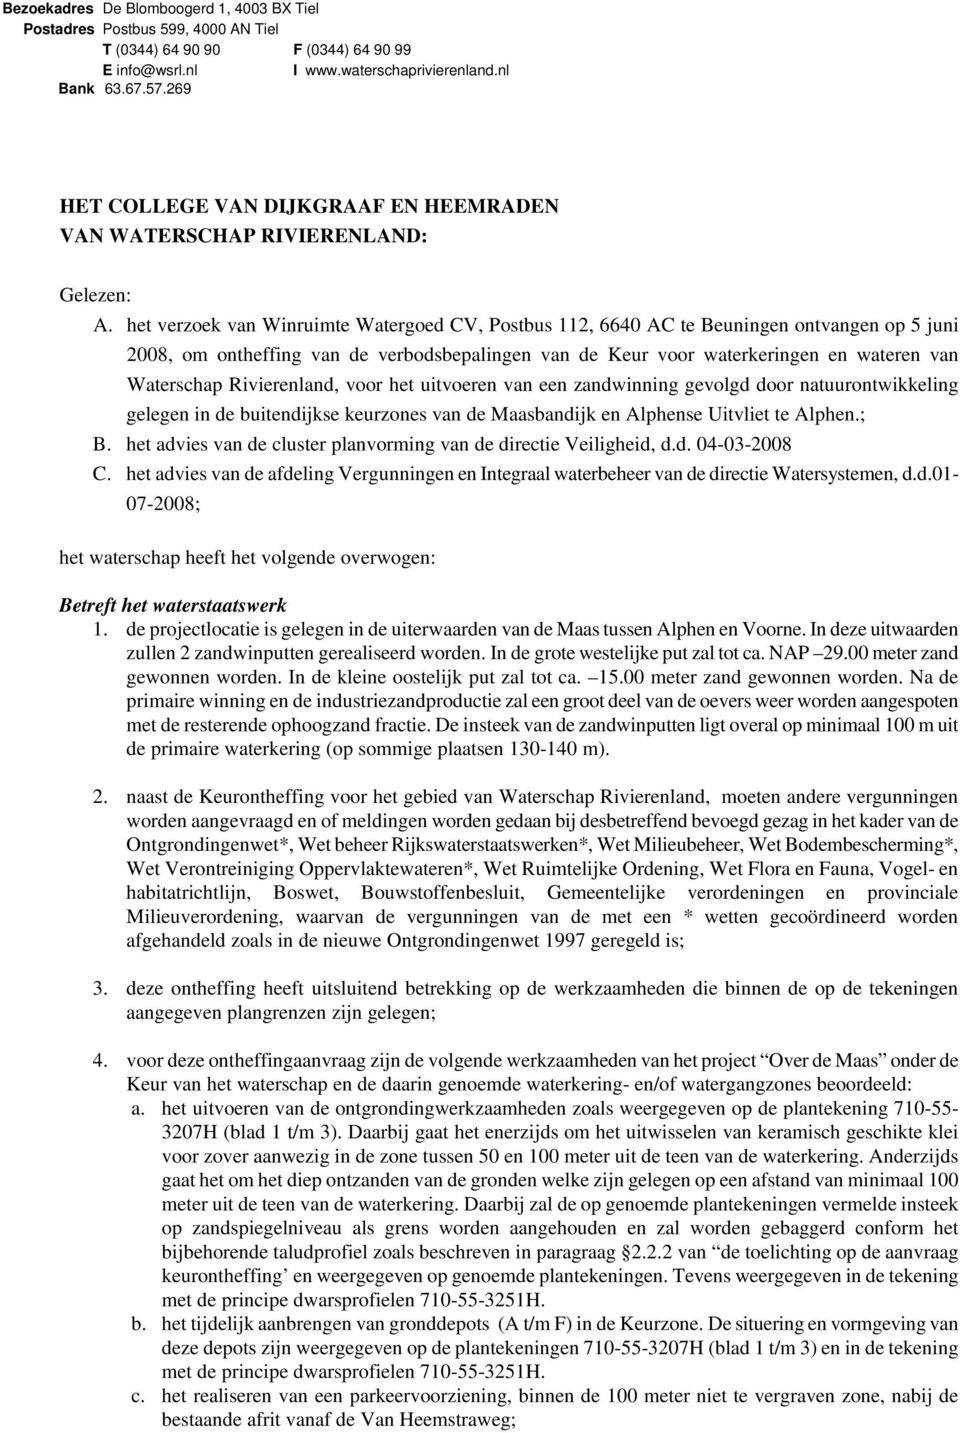 het verzoek van Winruimte Watergoed CV, Postbus 112, 6640 AC te Beuningen ontvangen op 5 juni 2008, om ontheffing van de verbodsbepalingen van de Keur voor waterkeringen en wateren van Waterschap